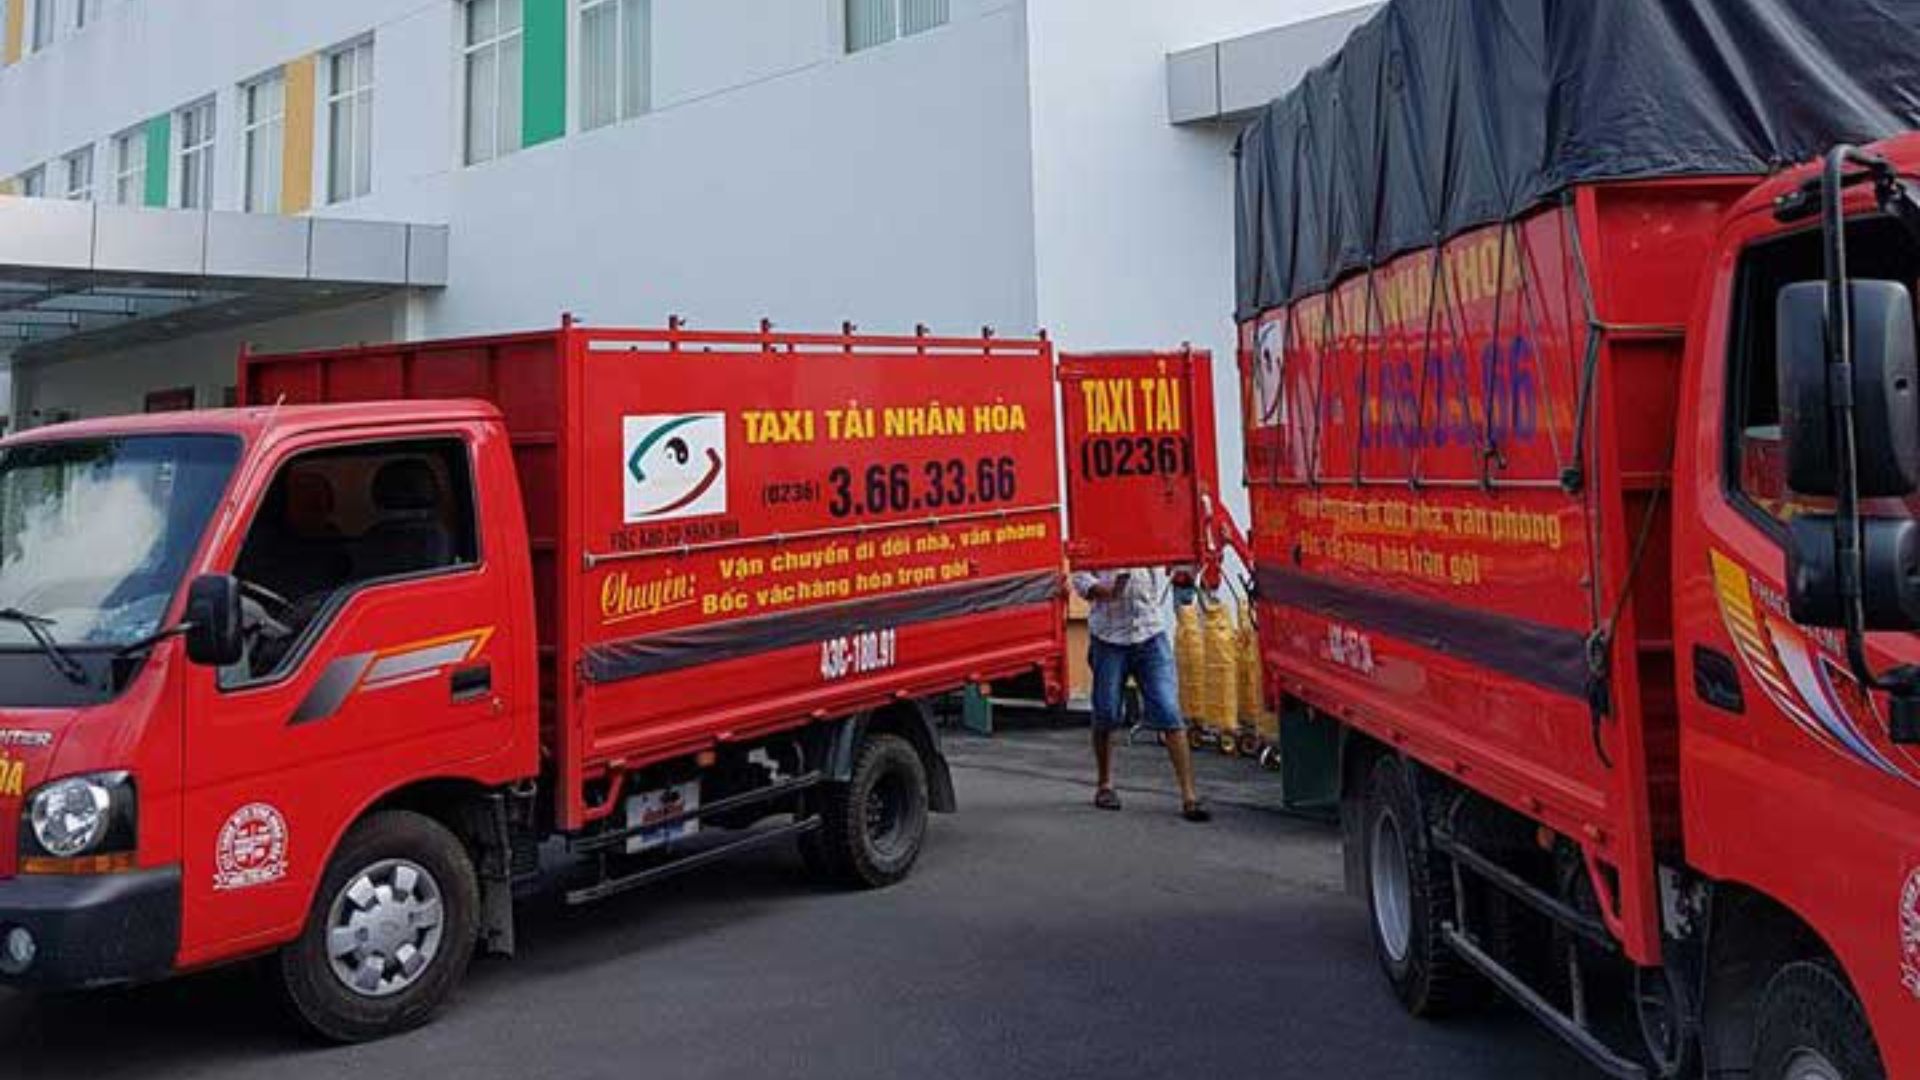 Taxi tải Nhân Hòa - Chuyên vận chuyển trọ Đà Nẵng hàng đầu